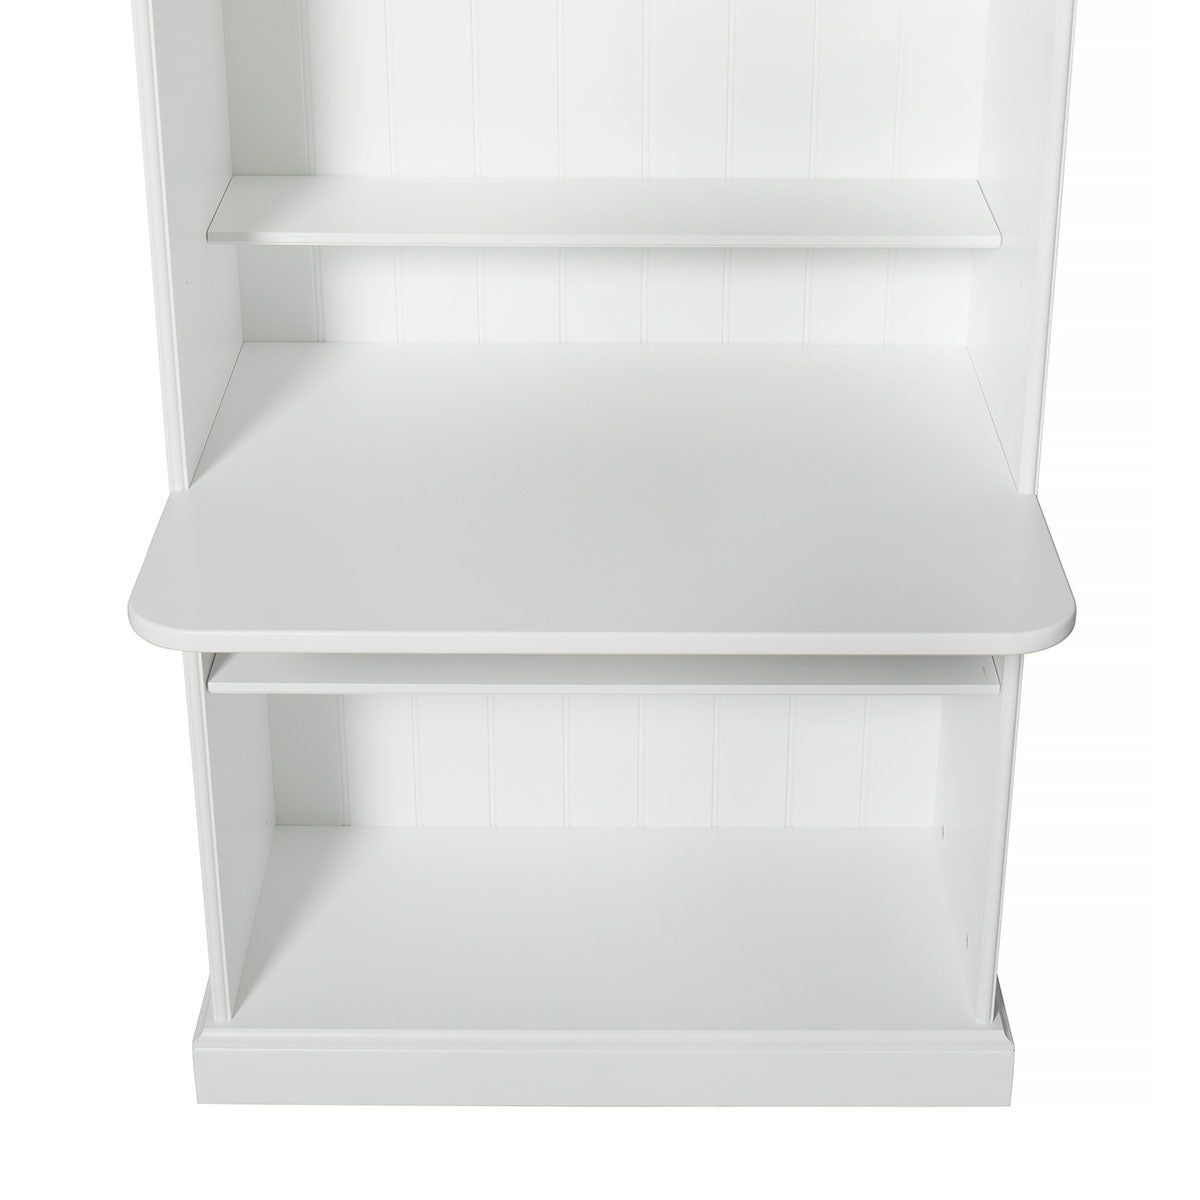 Seaside shelf with hooks, 90x20 cm – Oliver Furniture Com